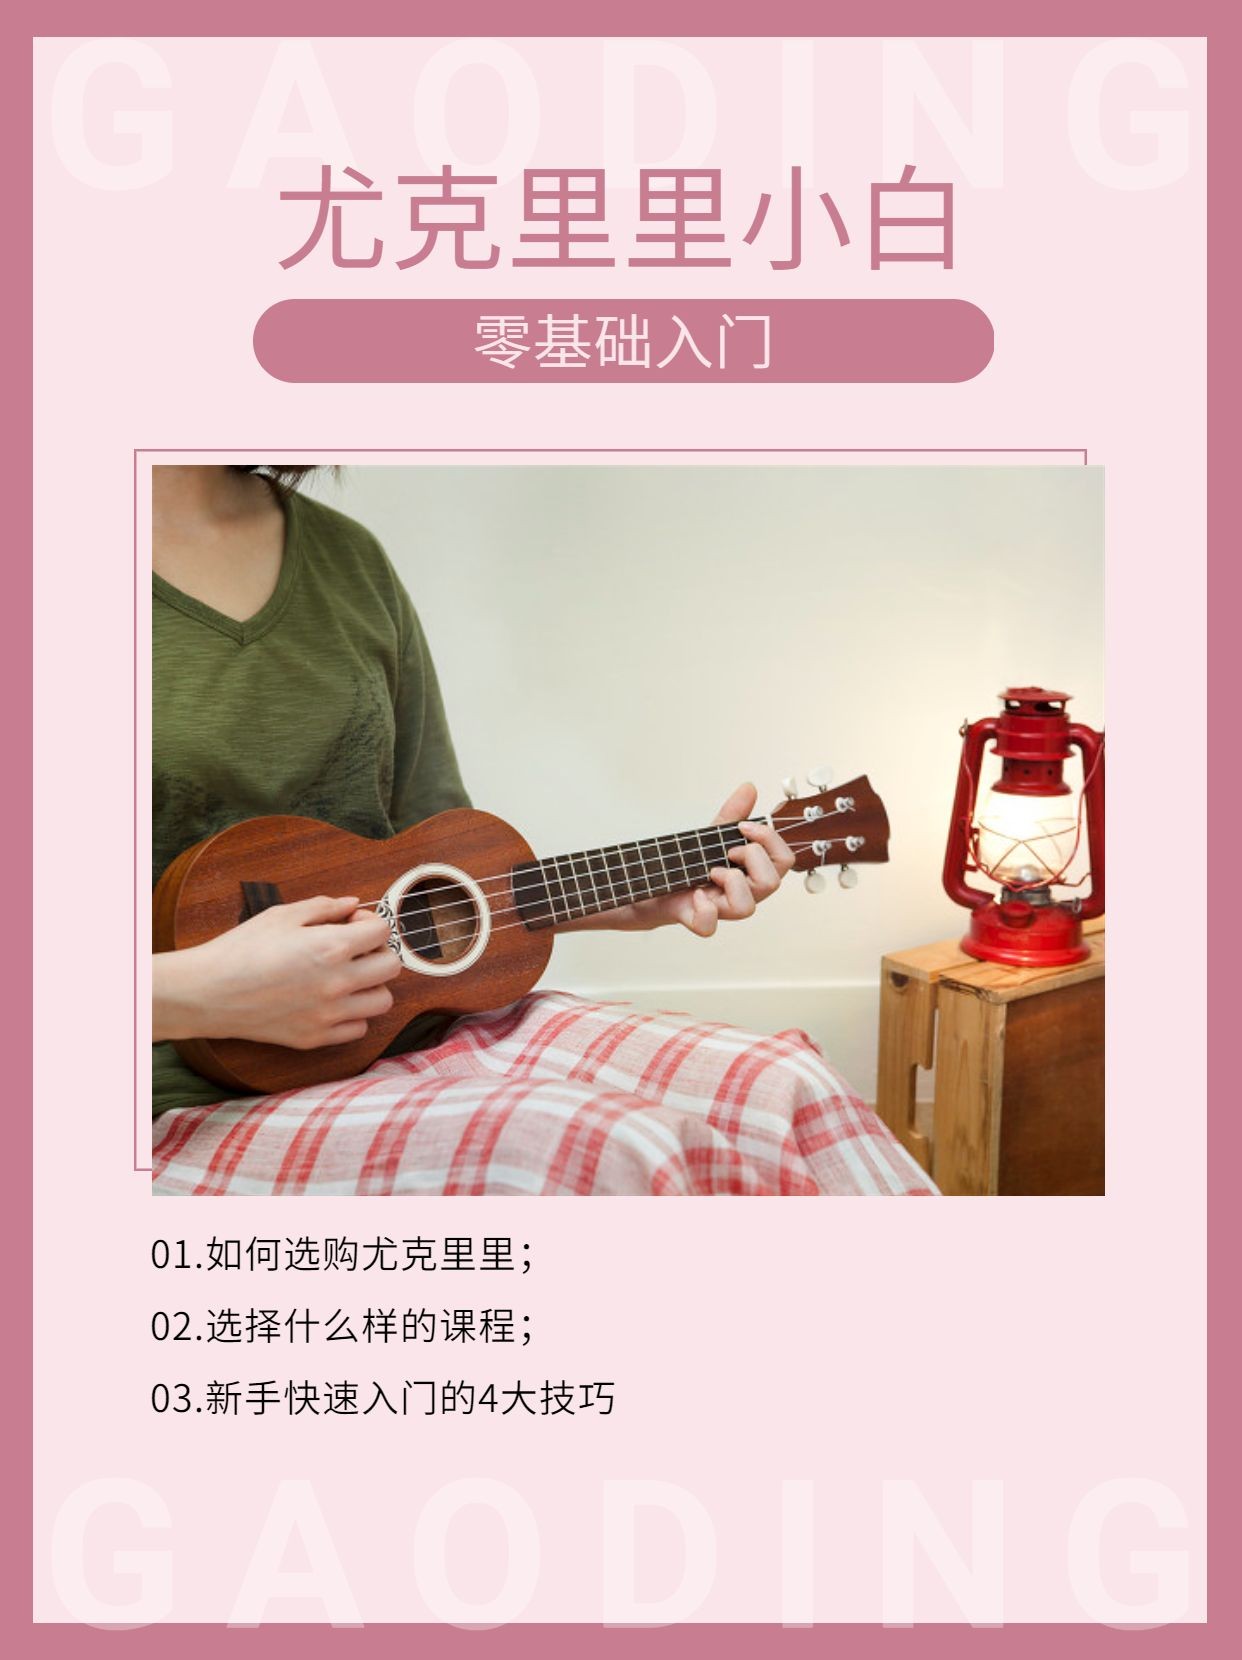 成人乐器吉他课程入门宣传介绍小红书配图预览效果